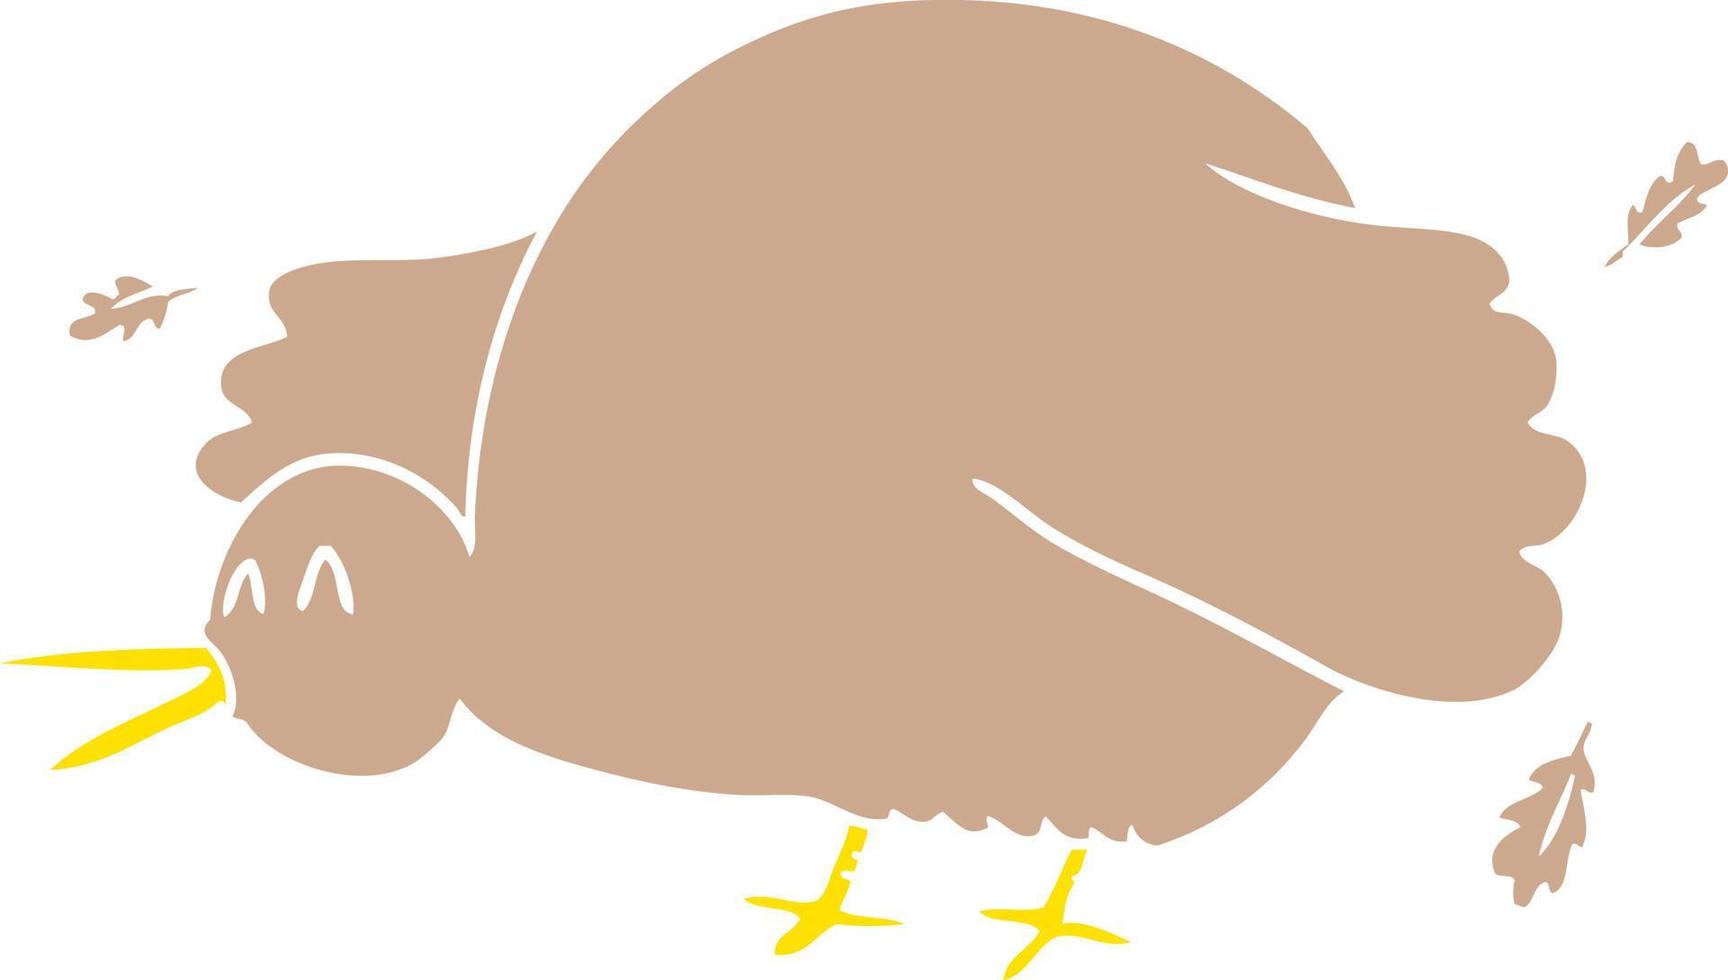 alas de ave kiwi de dibujos animados de estilo de color plano vector